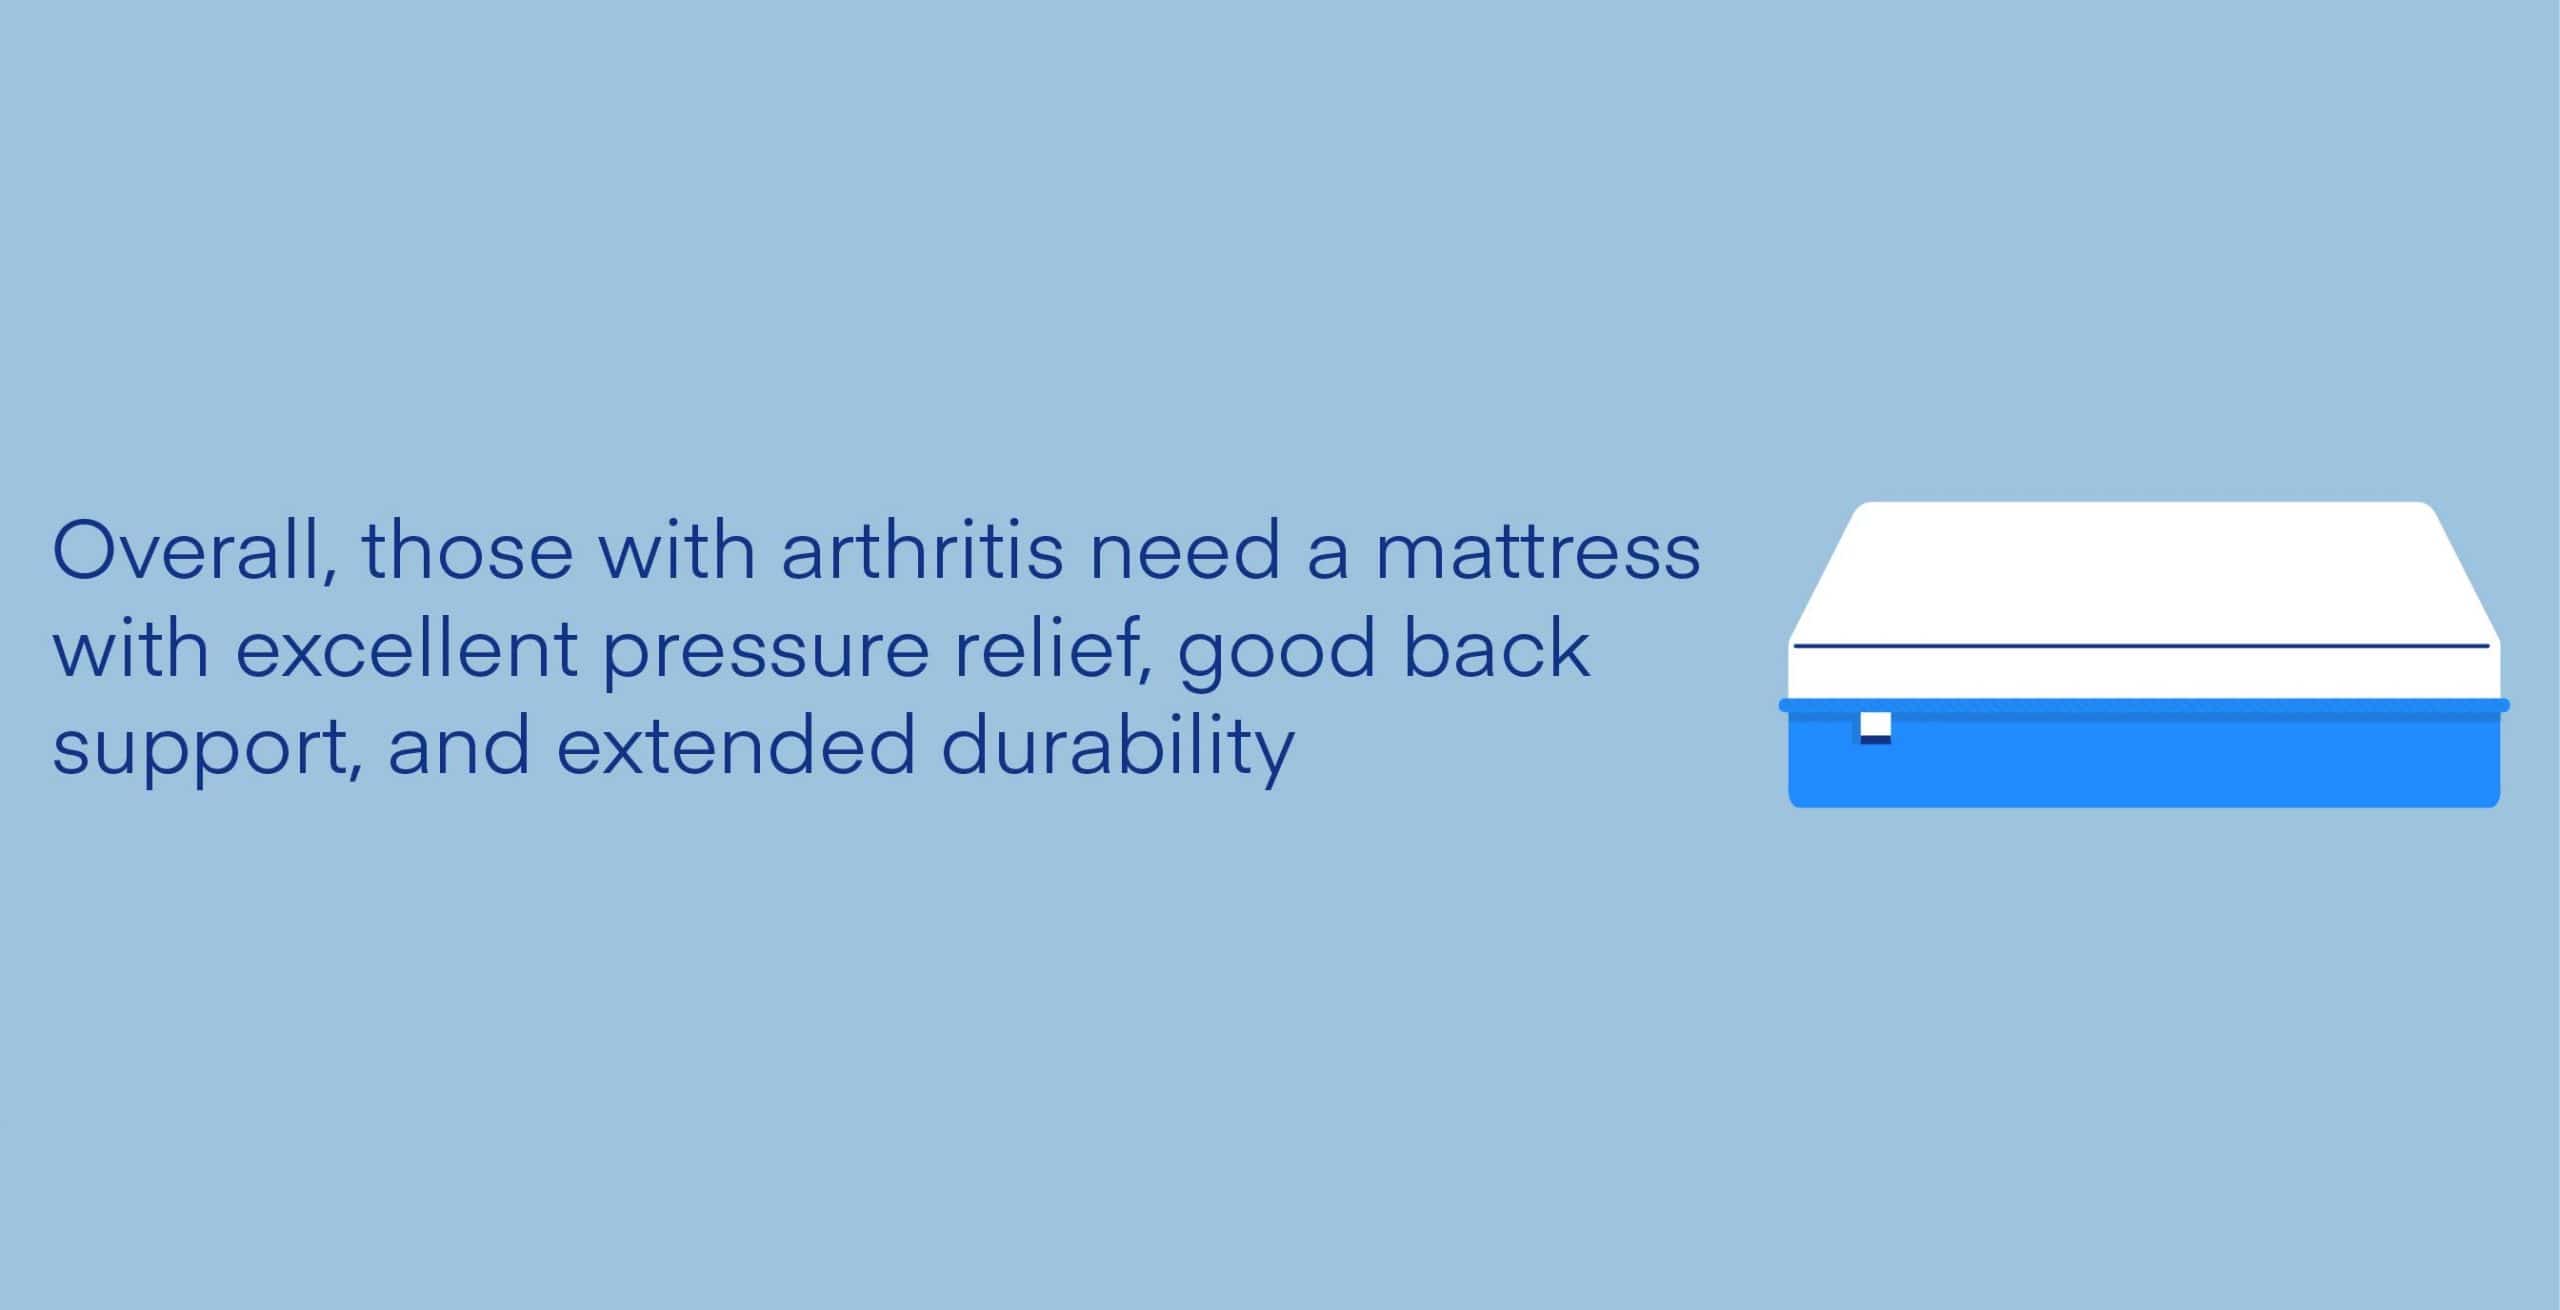 Best-Mattress-for-Arthritis